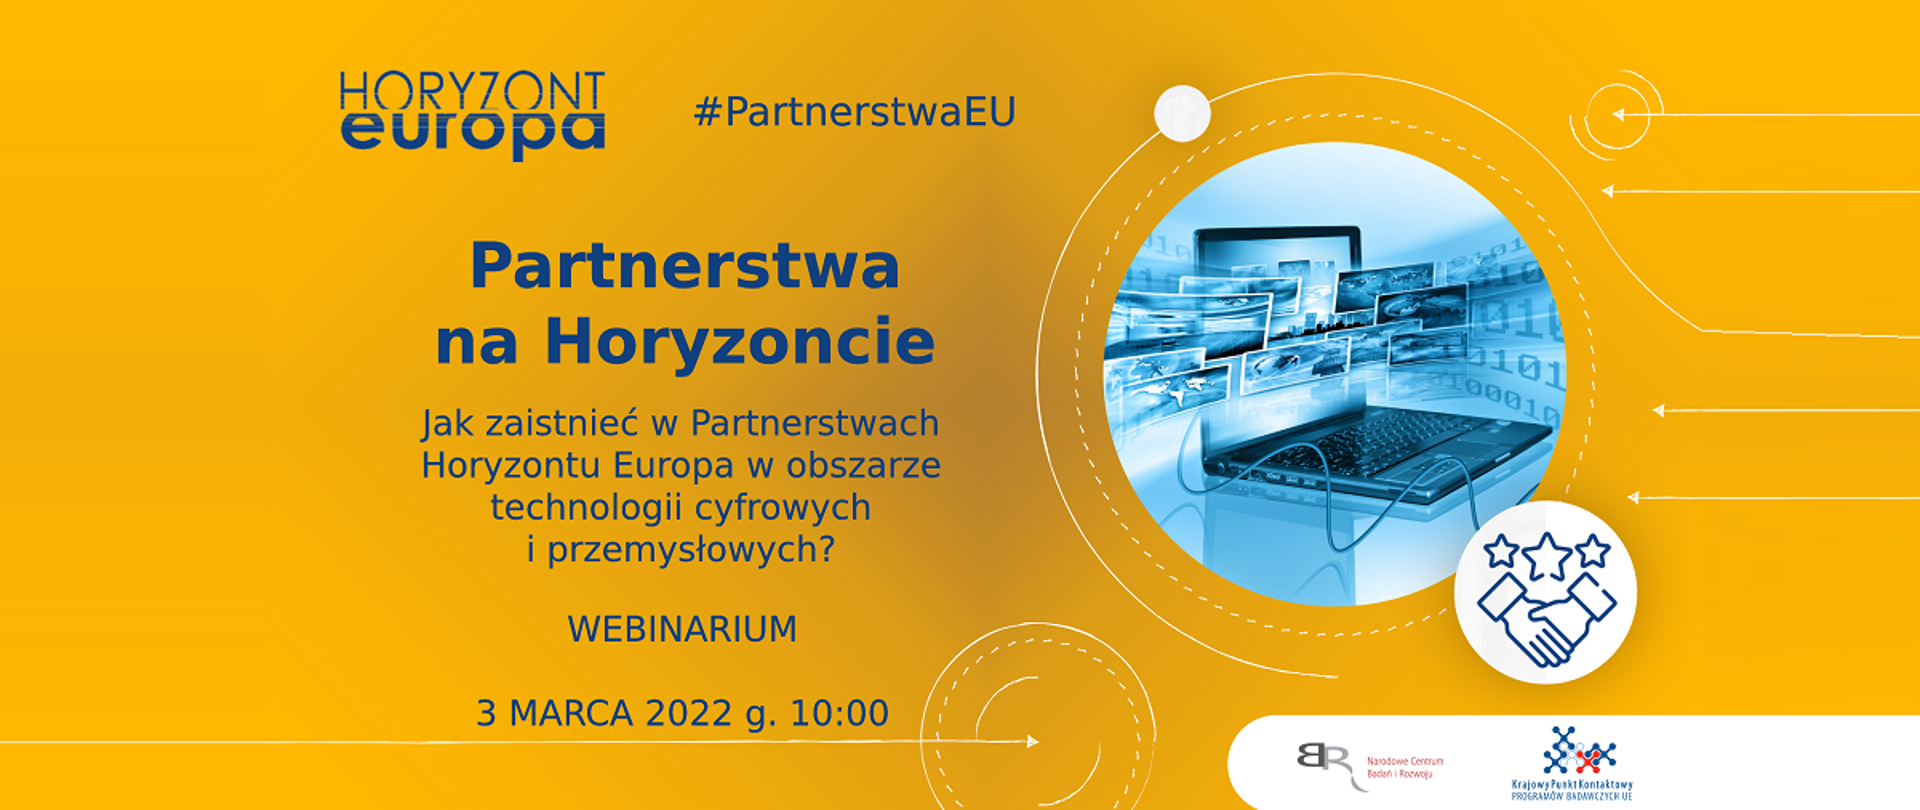 Horyzont Europa
Partnerstwa na Horyzoncie
Jak zaistnieć w Partnerstwach Horyzontu Europa w obszarze technologii cyfrowych i przemysłowych?
Webinarium
3 marca 2022 g. 10:00